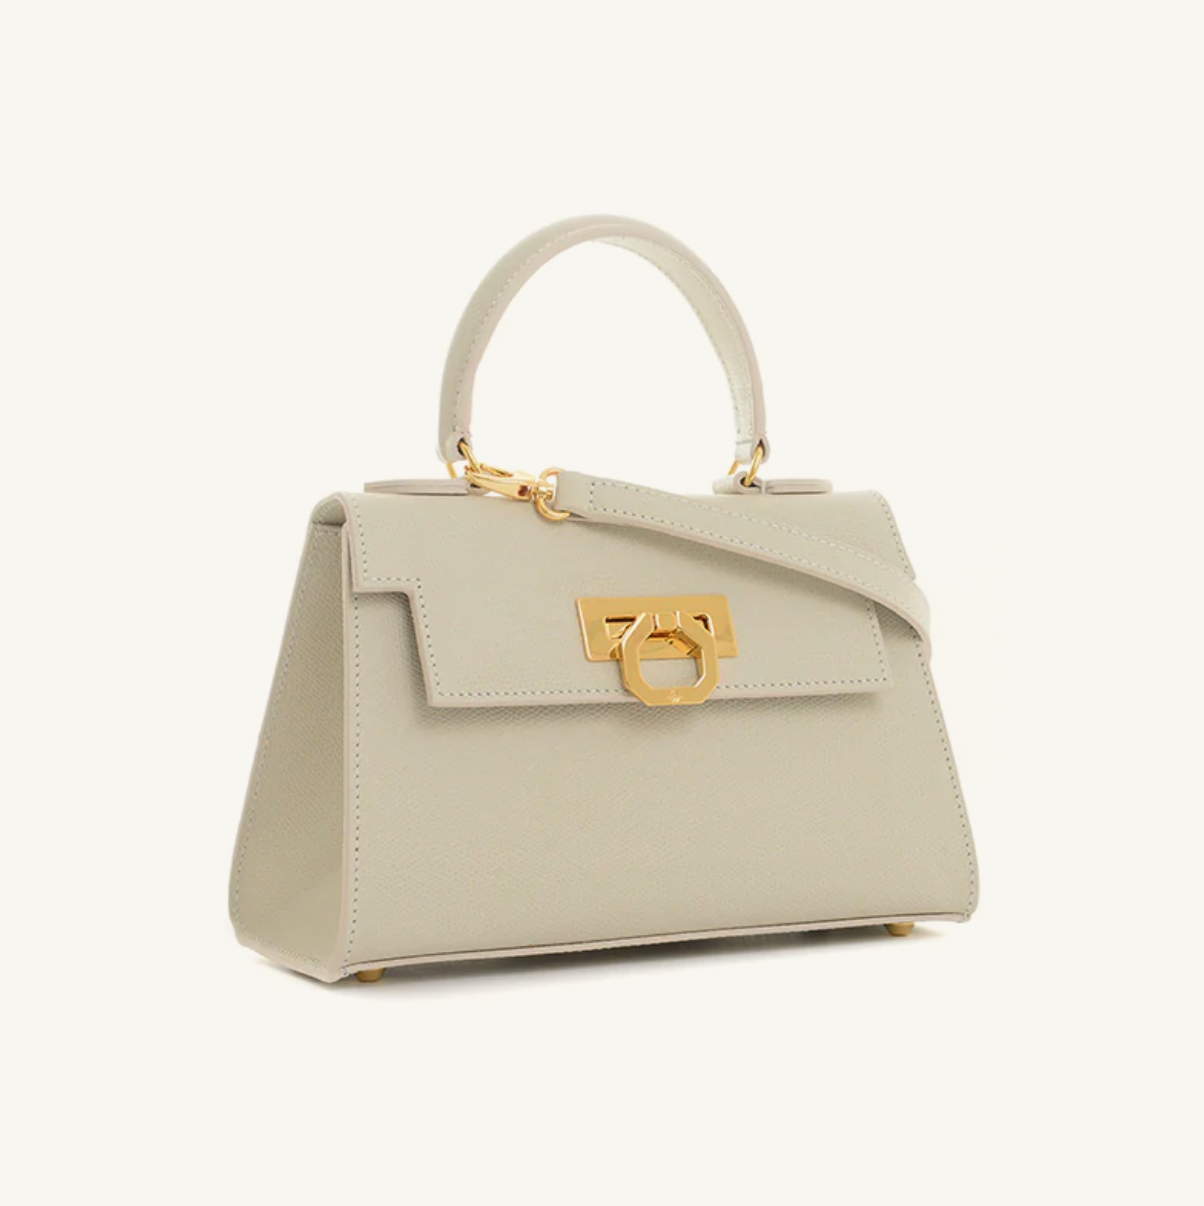 Carbotti handbags - Elegant Made in Italy handbags